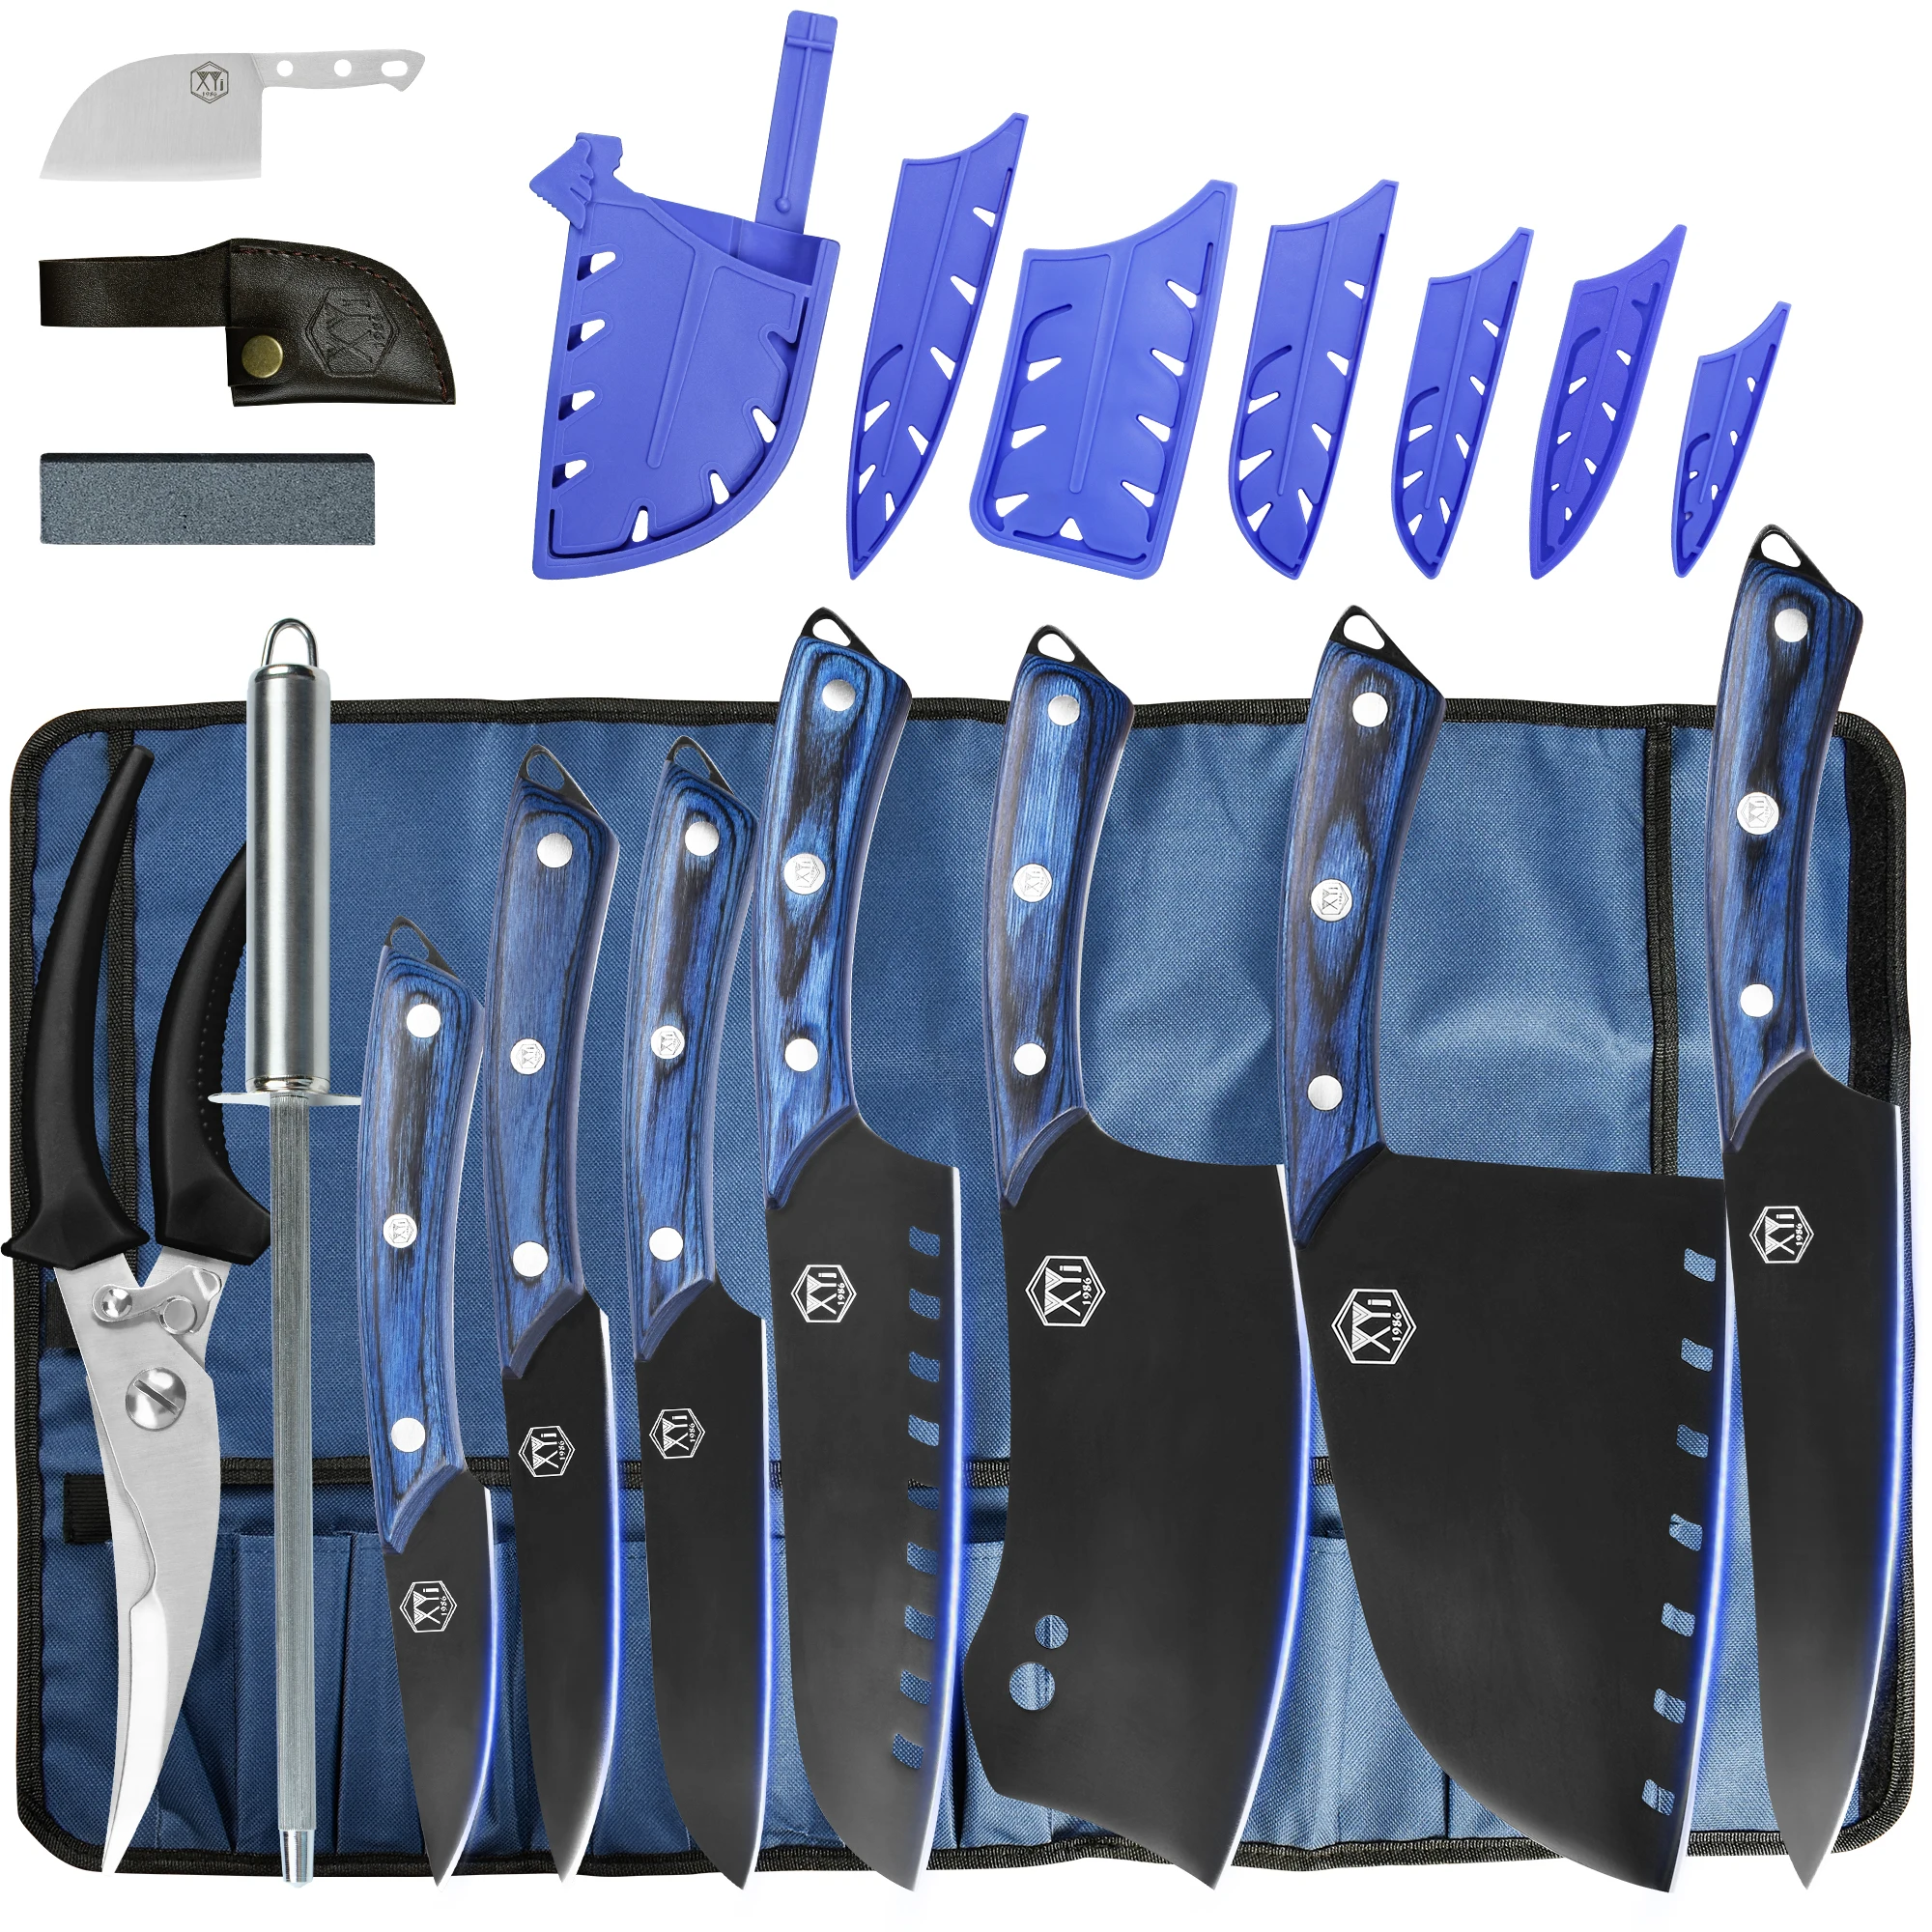 

Набор профессиональных кухонных ножей XYj, набор из 7 предметов с рулонным мешком, Заточная палочка, ножницы, кухонные аксессуары, набор инструментов для ножей в подарочной упаковке